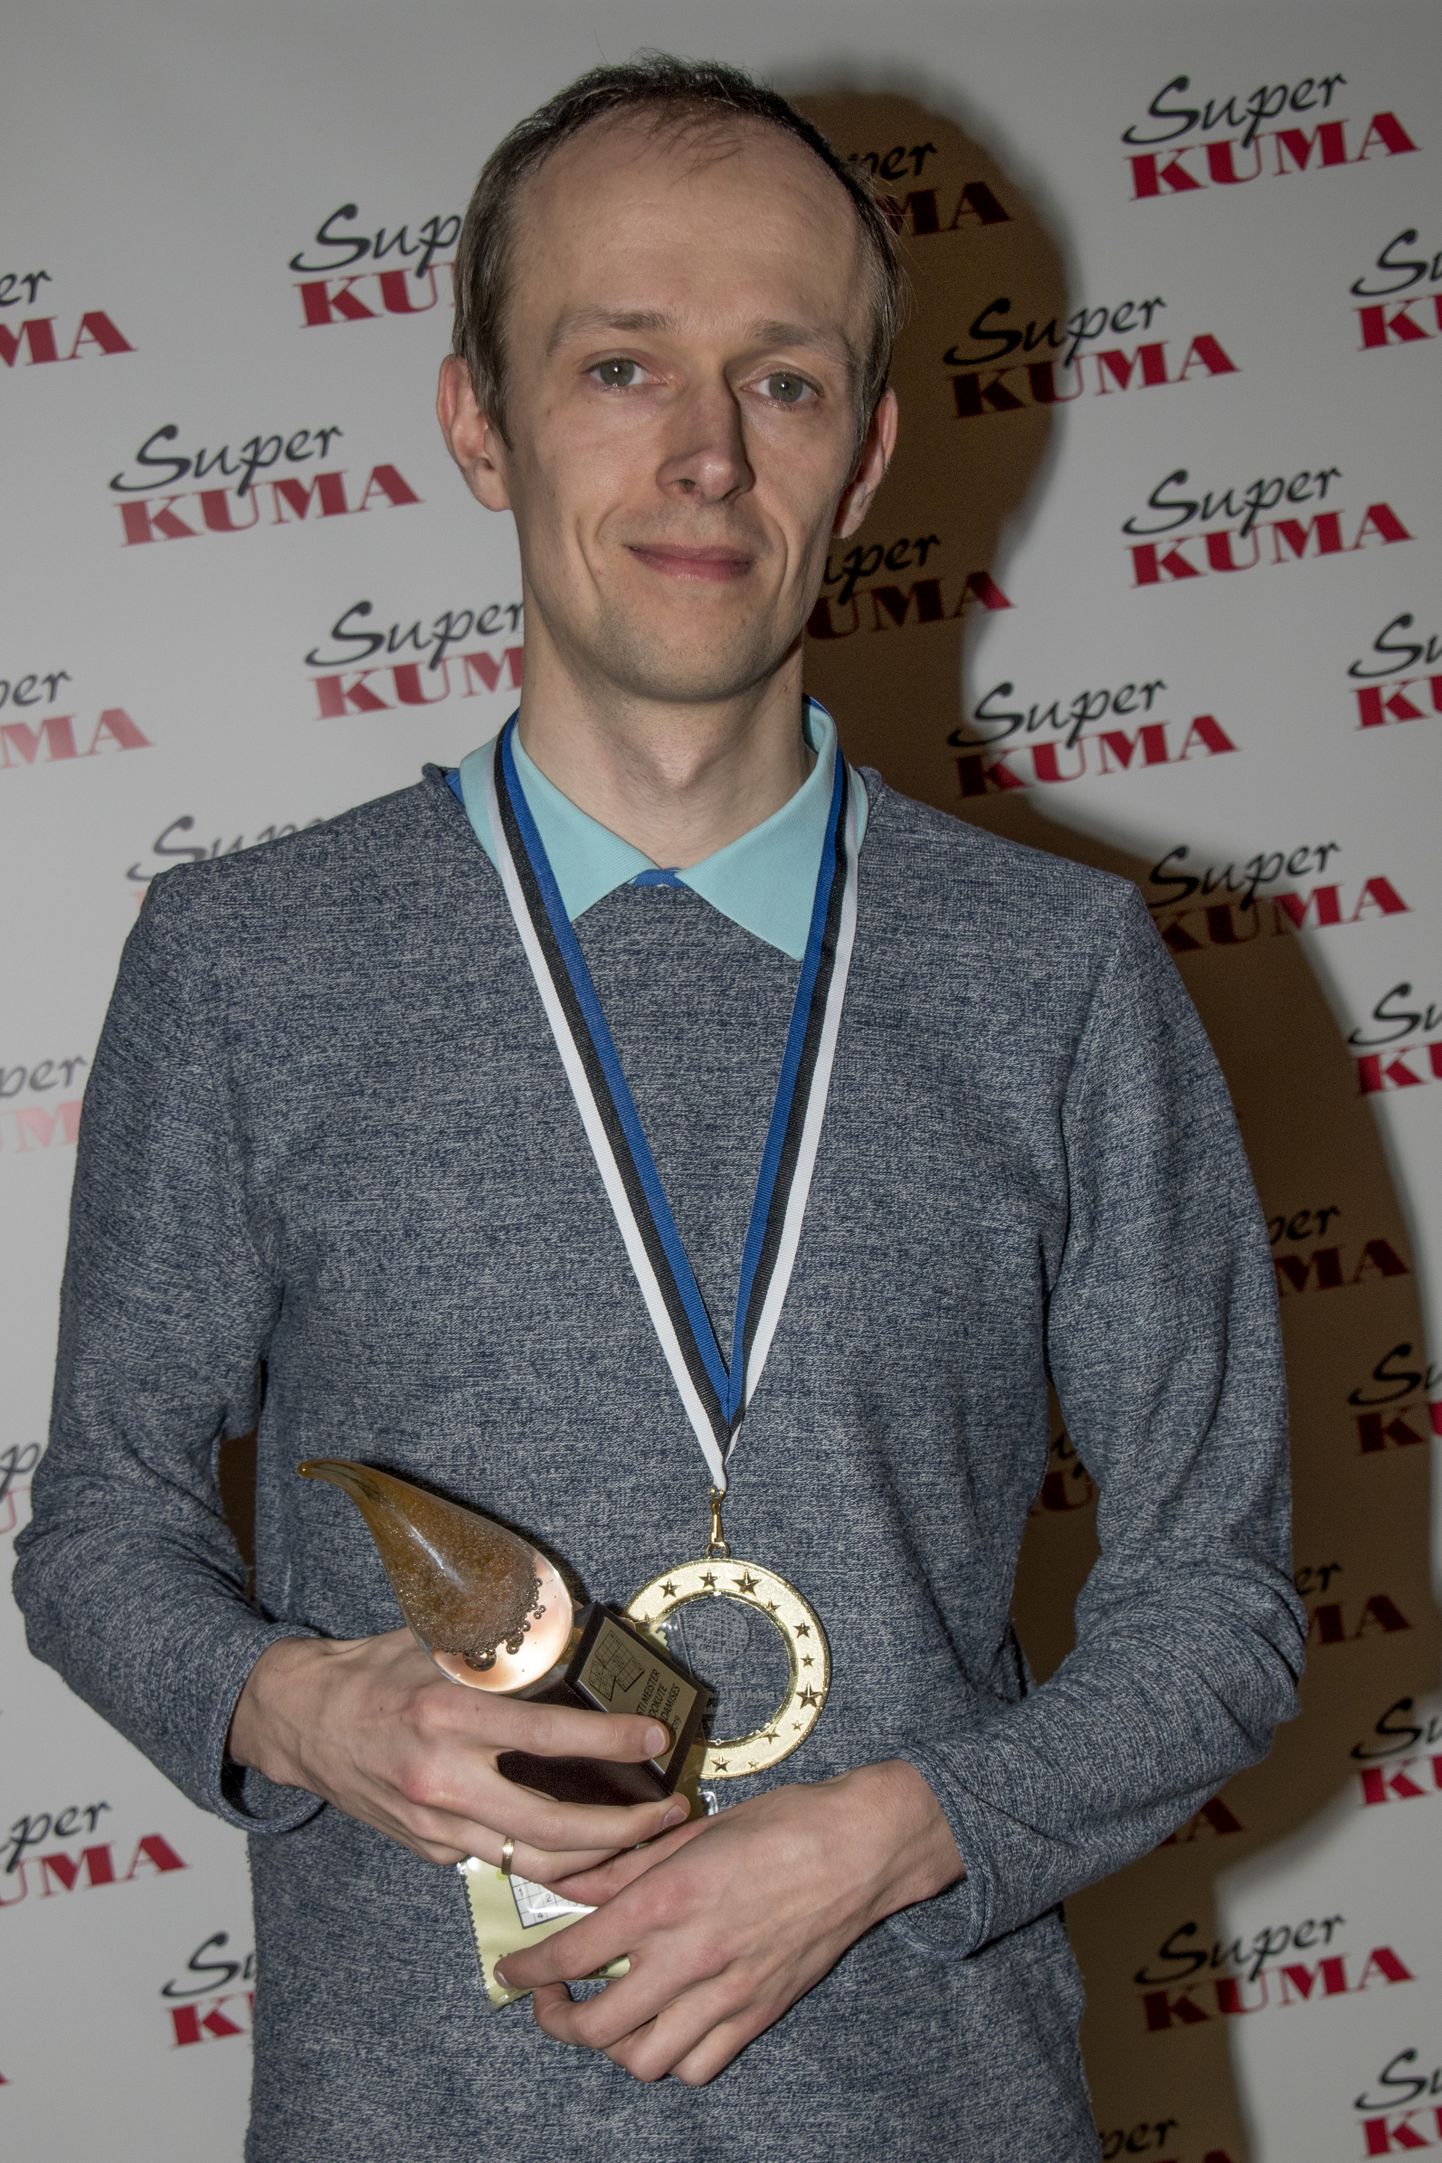 Üheksandat korda järjest tuli Eesti sudokumeistriks Tiit Vunk.